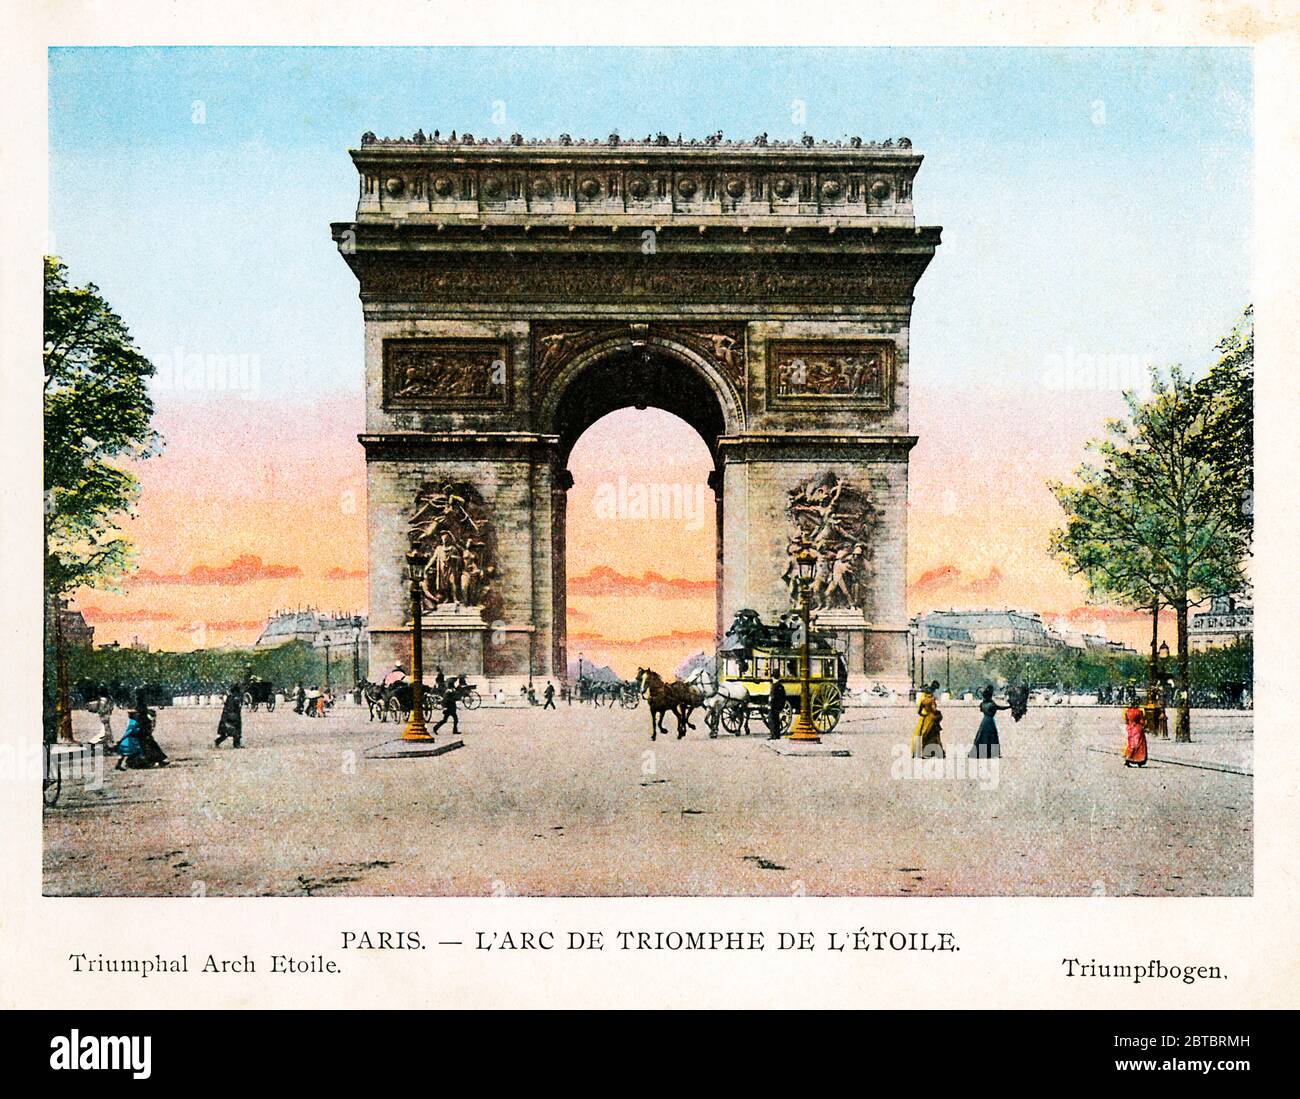 Arc de Triomphe de L'Étoile, París 1900 Fotografía en color del famoso monumento francés a las guerras revolucionarias y napoleónicas, iniciado por Bonaparte en 1806 y terminado en 1836 Foto de stock